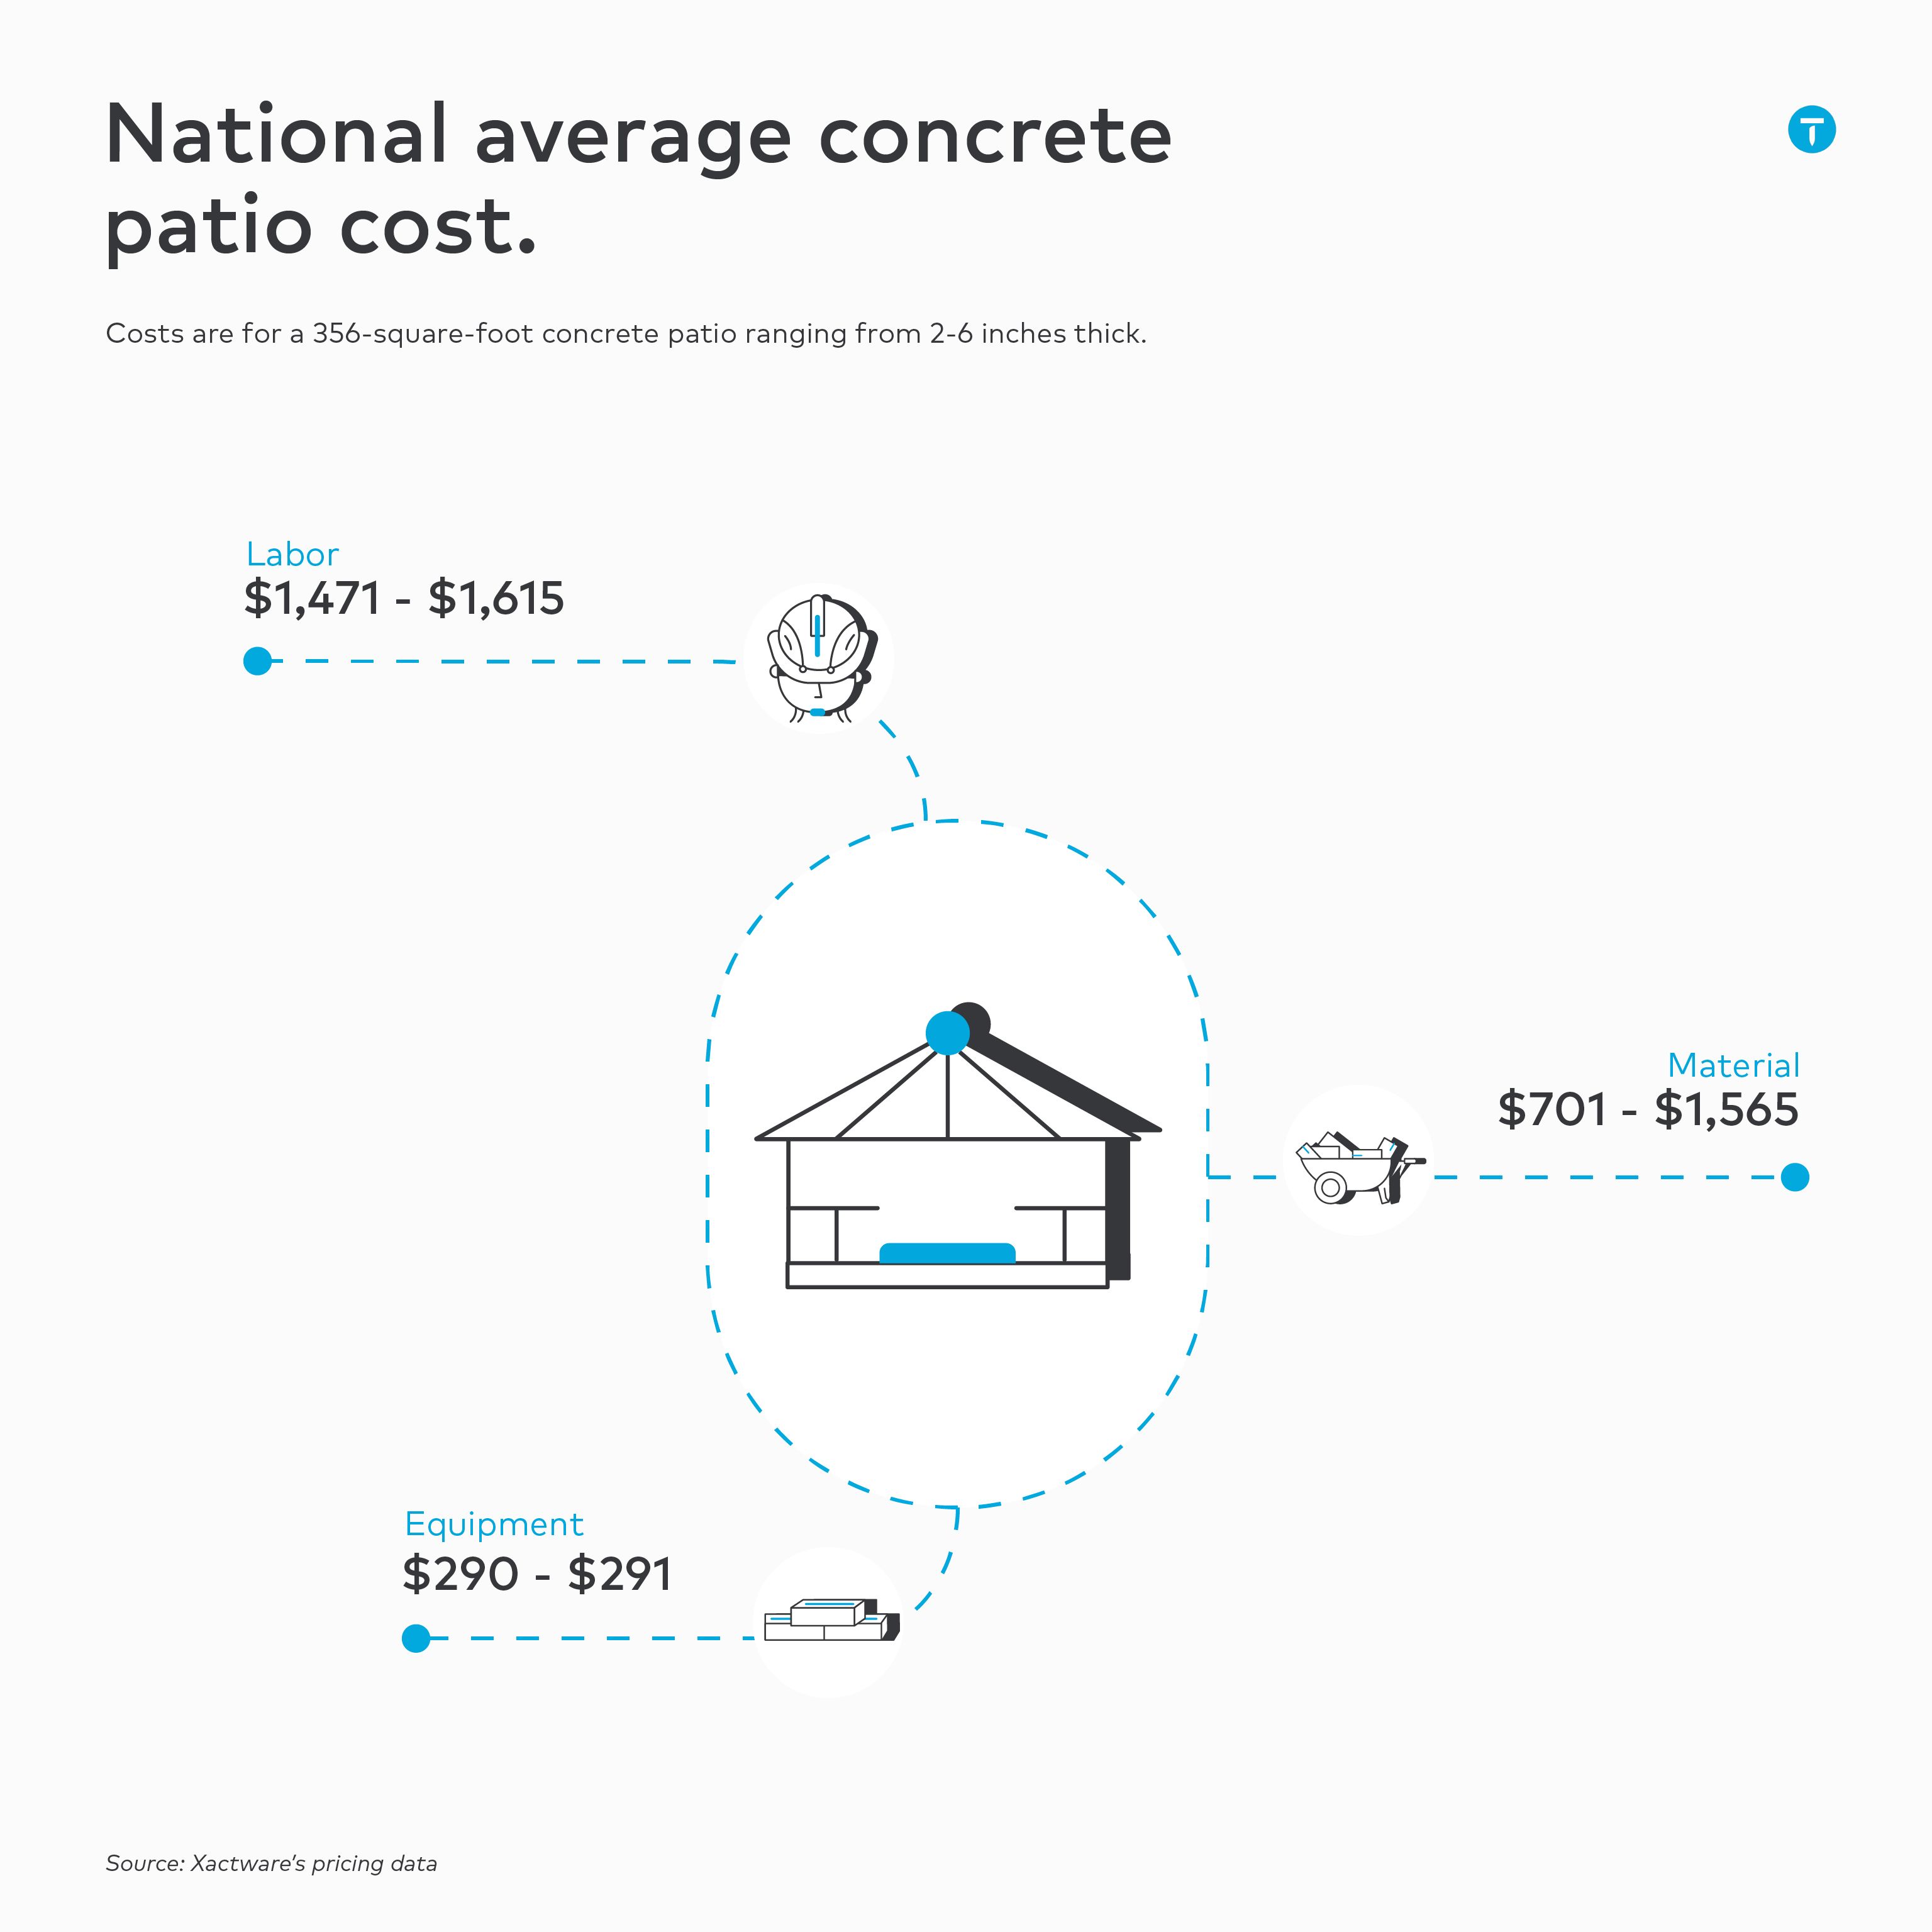 concrete patio materials and labor cost